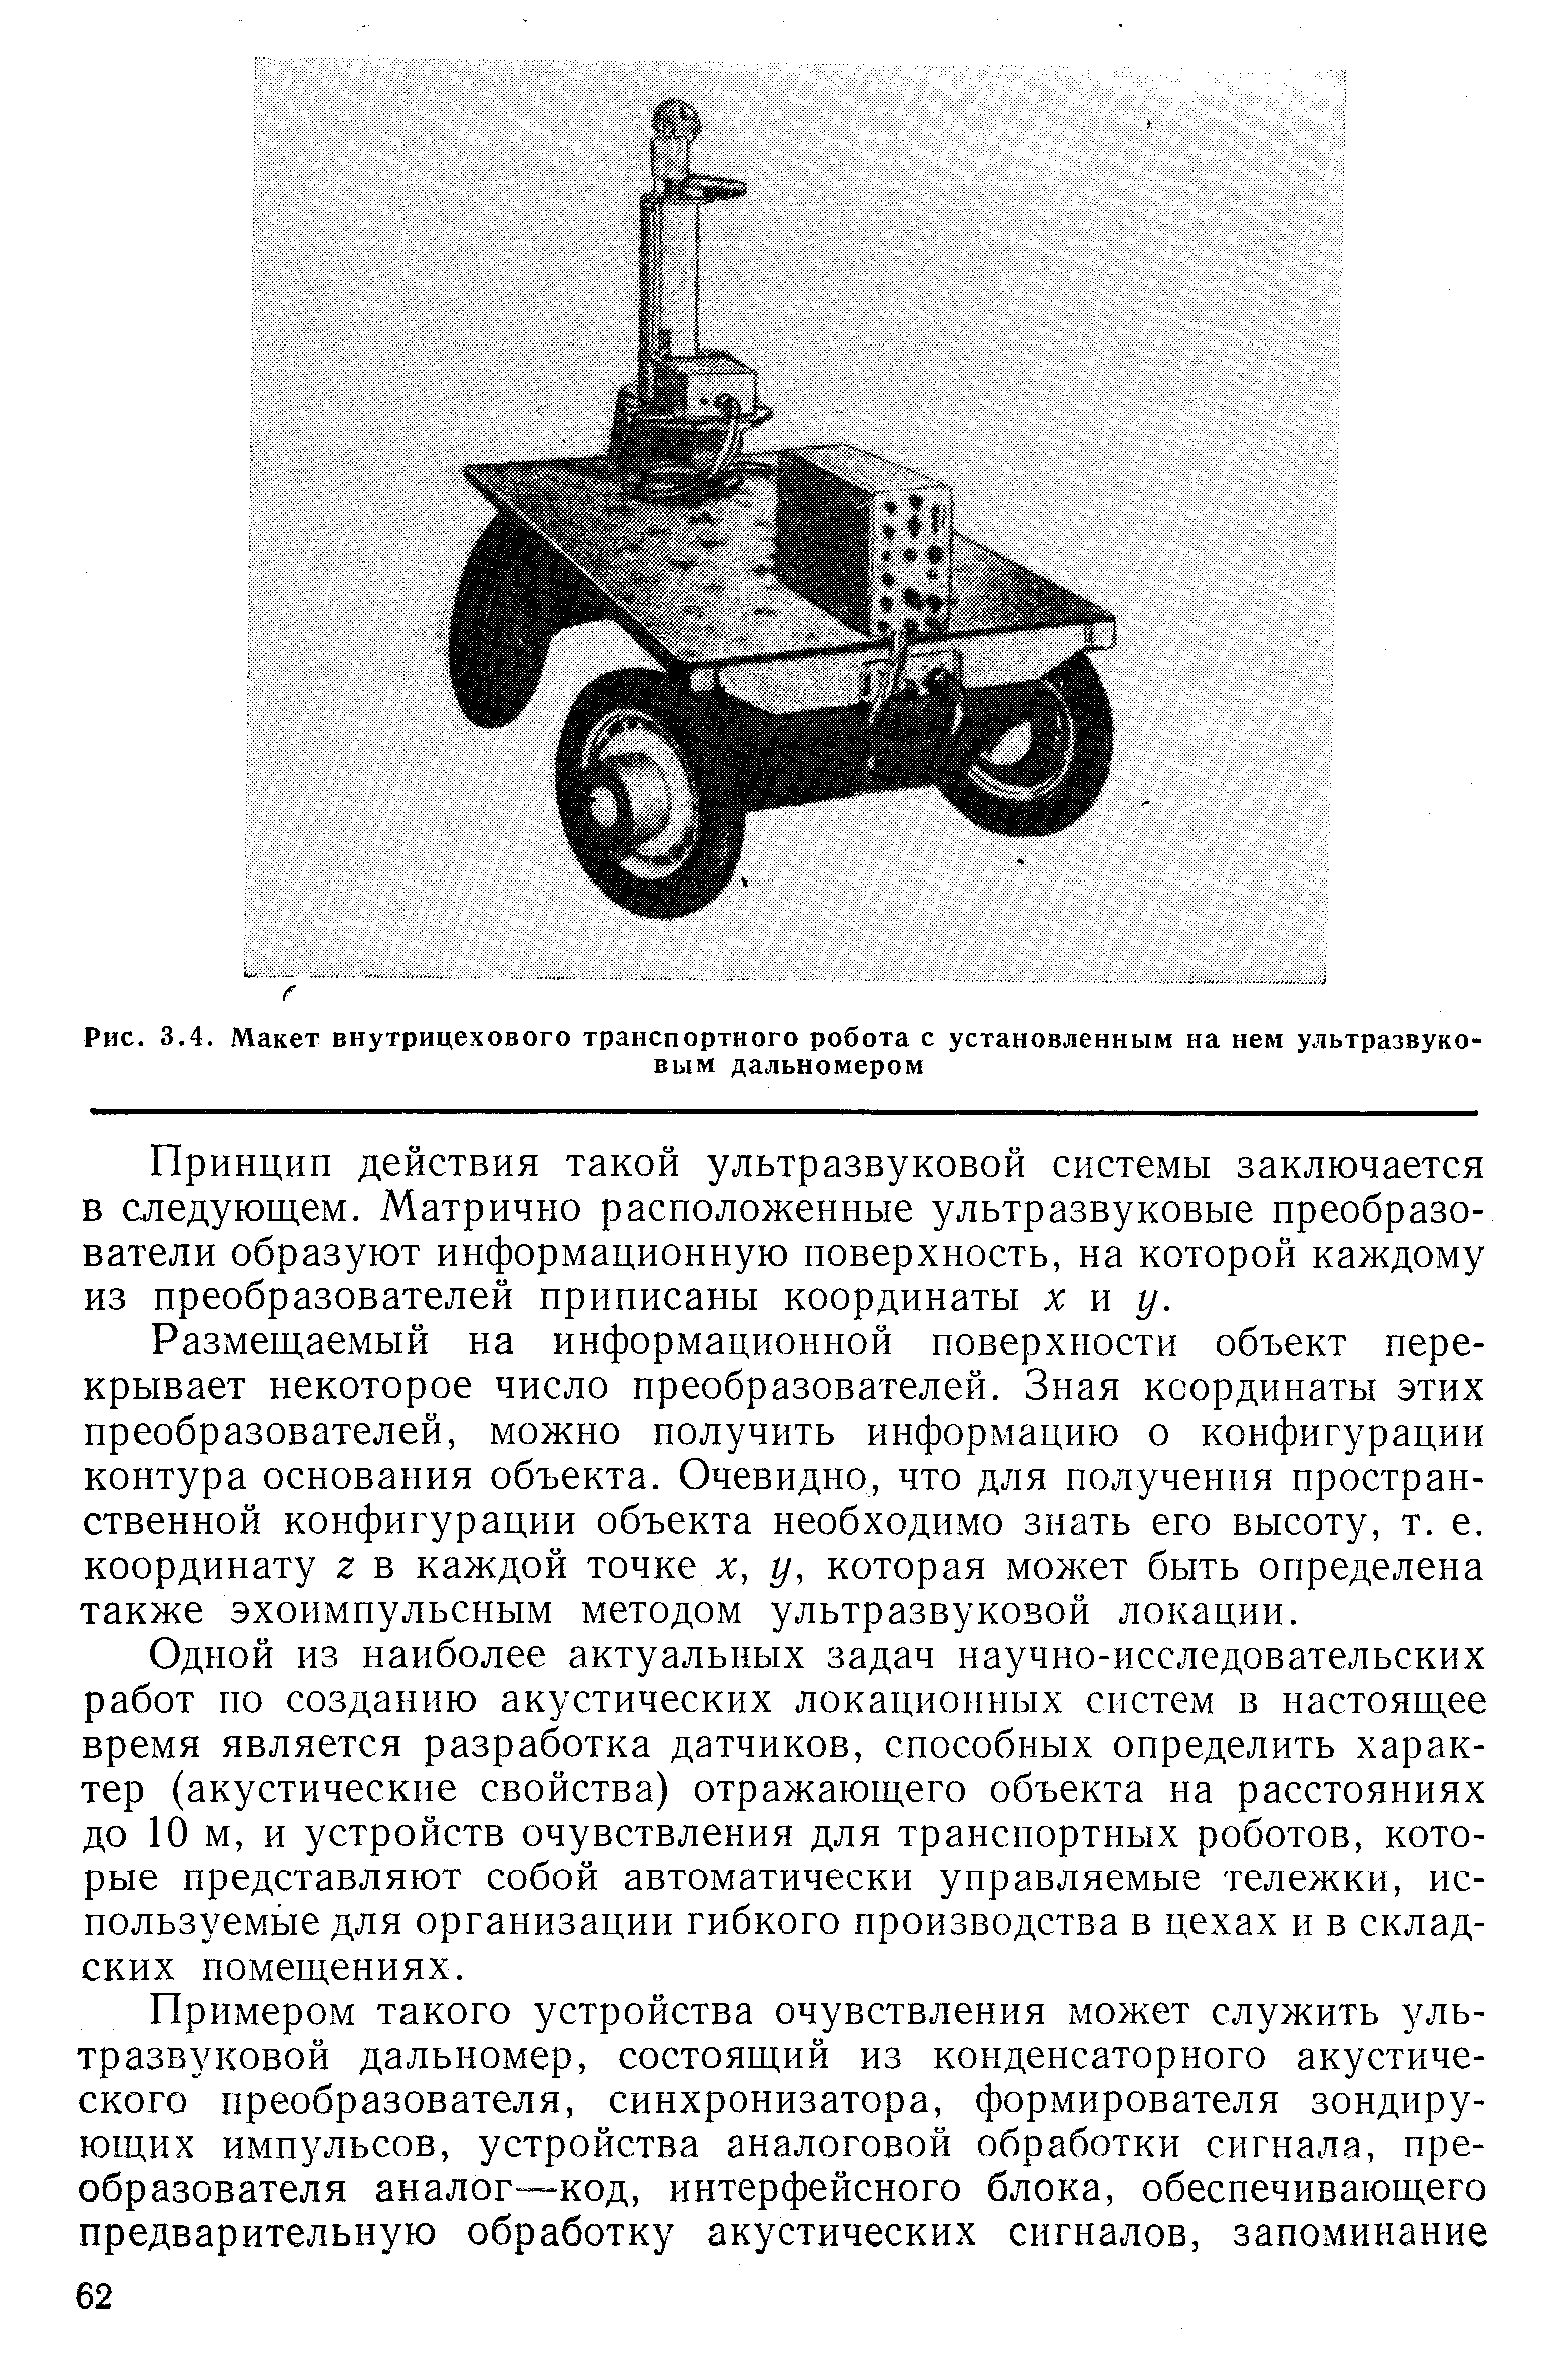 Рис. 3.4. Макет внутрицехового транспортного робота с установленным на нем ультразвуковым дальномером
